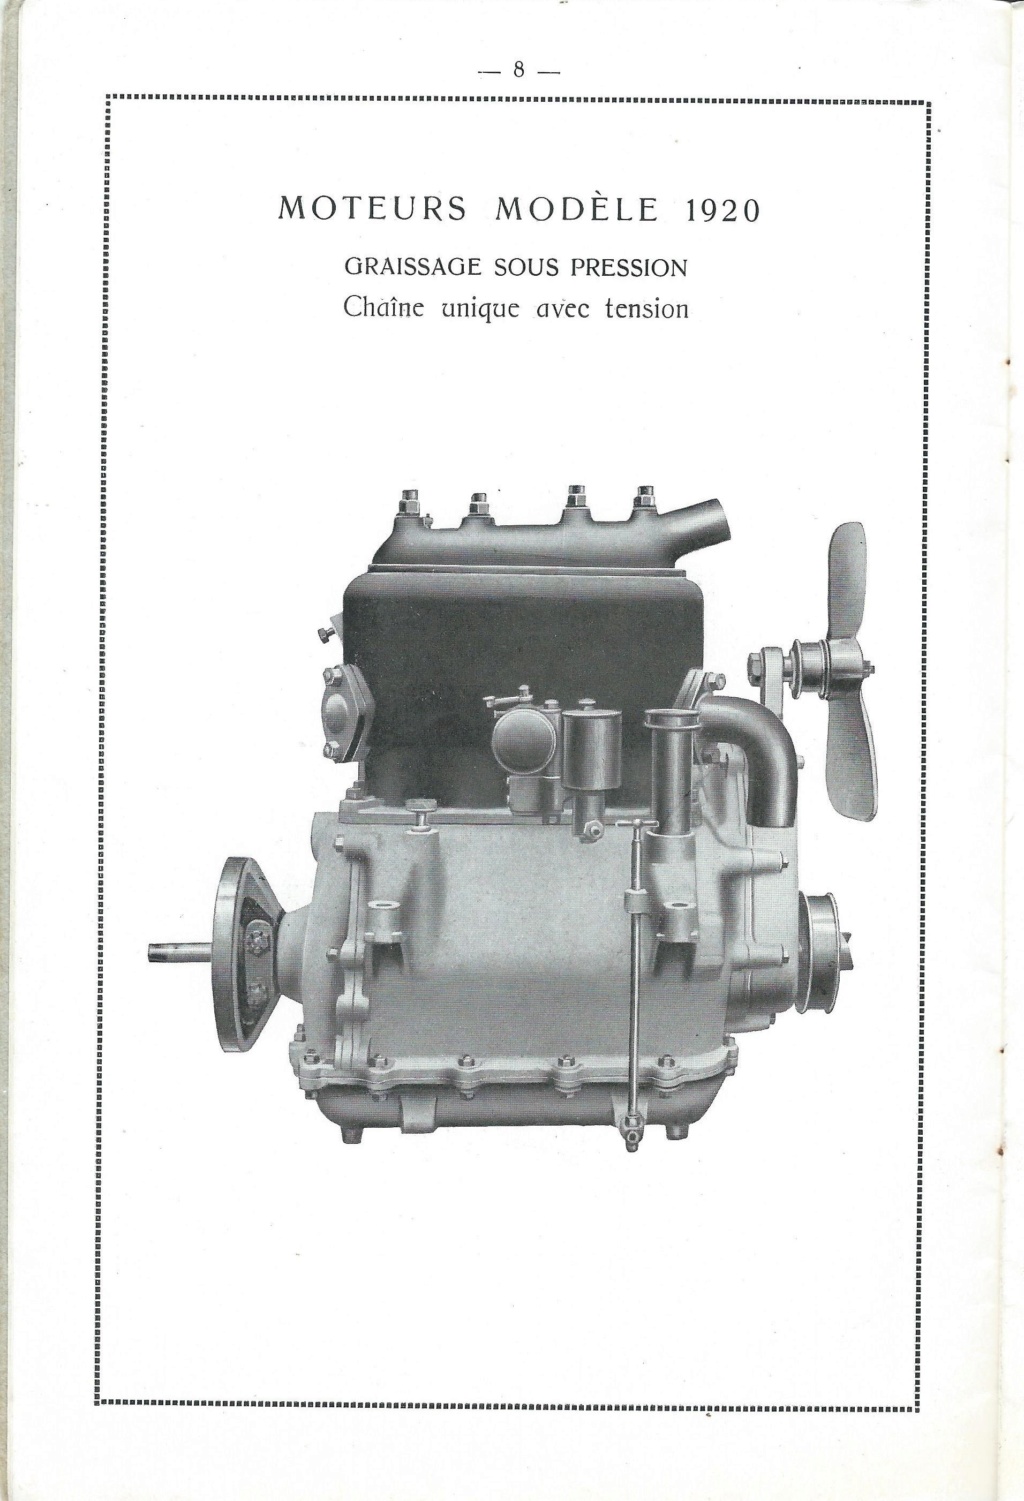 Les Marques de moteurs ayant équipé des CORRE ou des LICORNE Chapui18